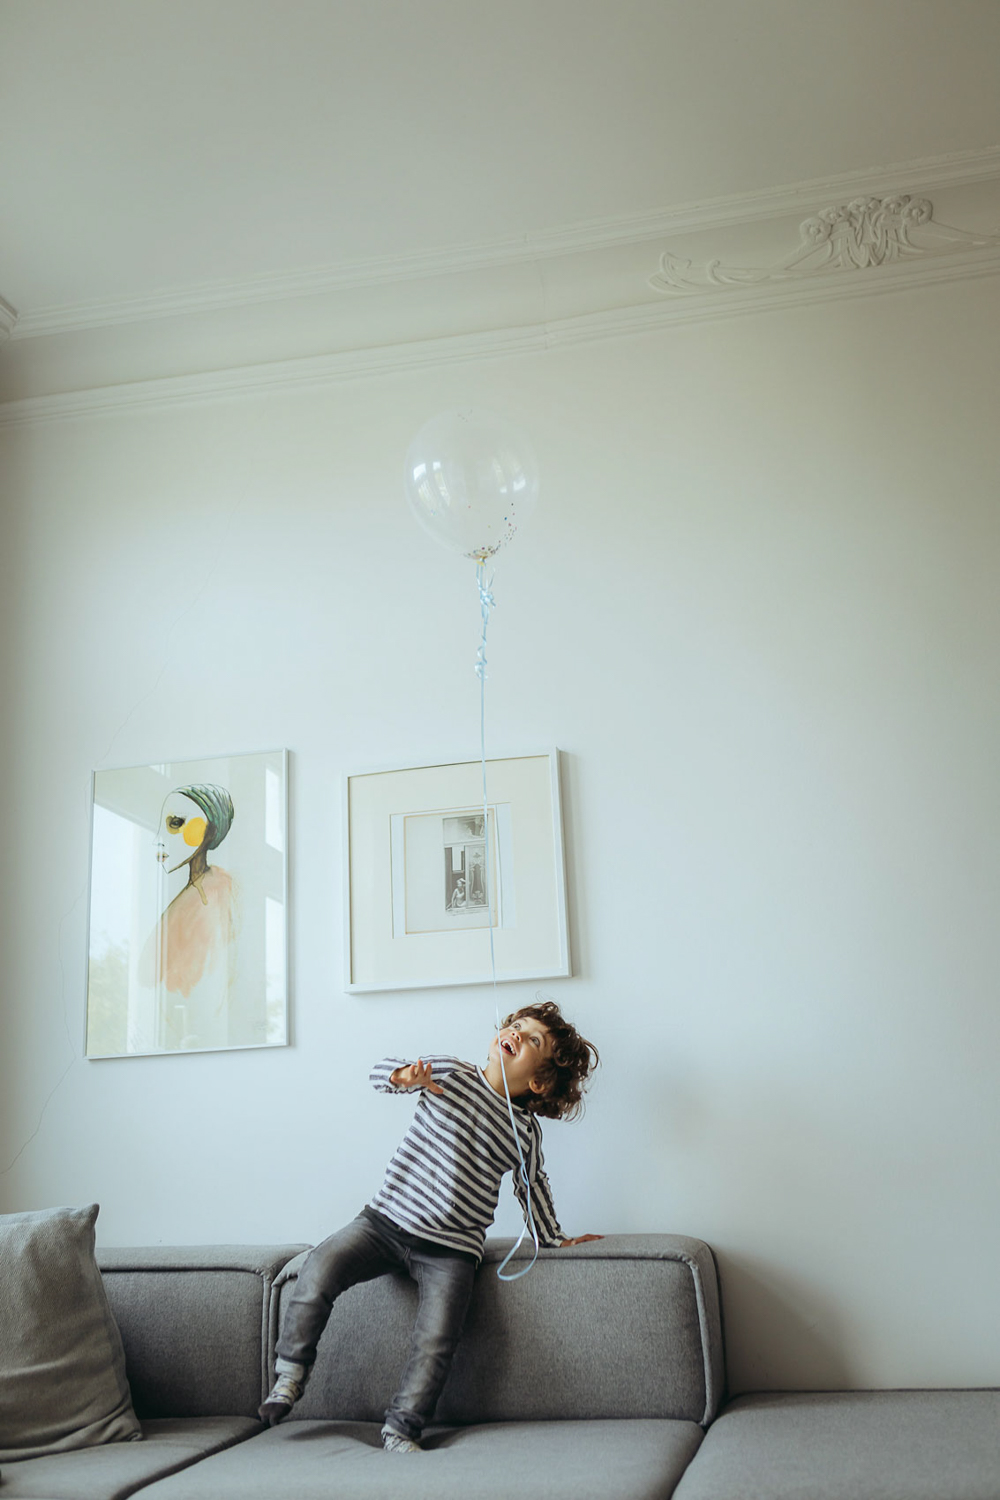 Kind spielt mit Luftballon im Wohnzimmer auf Couch